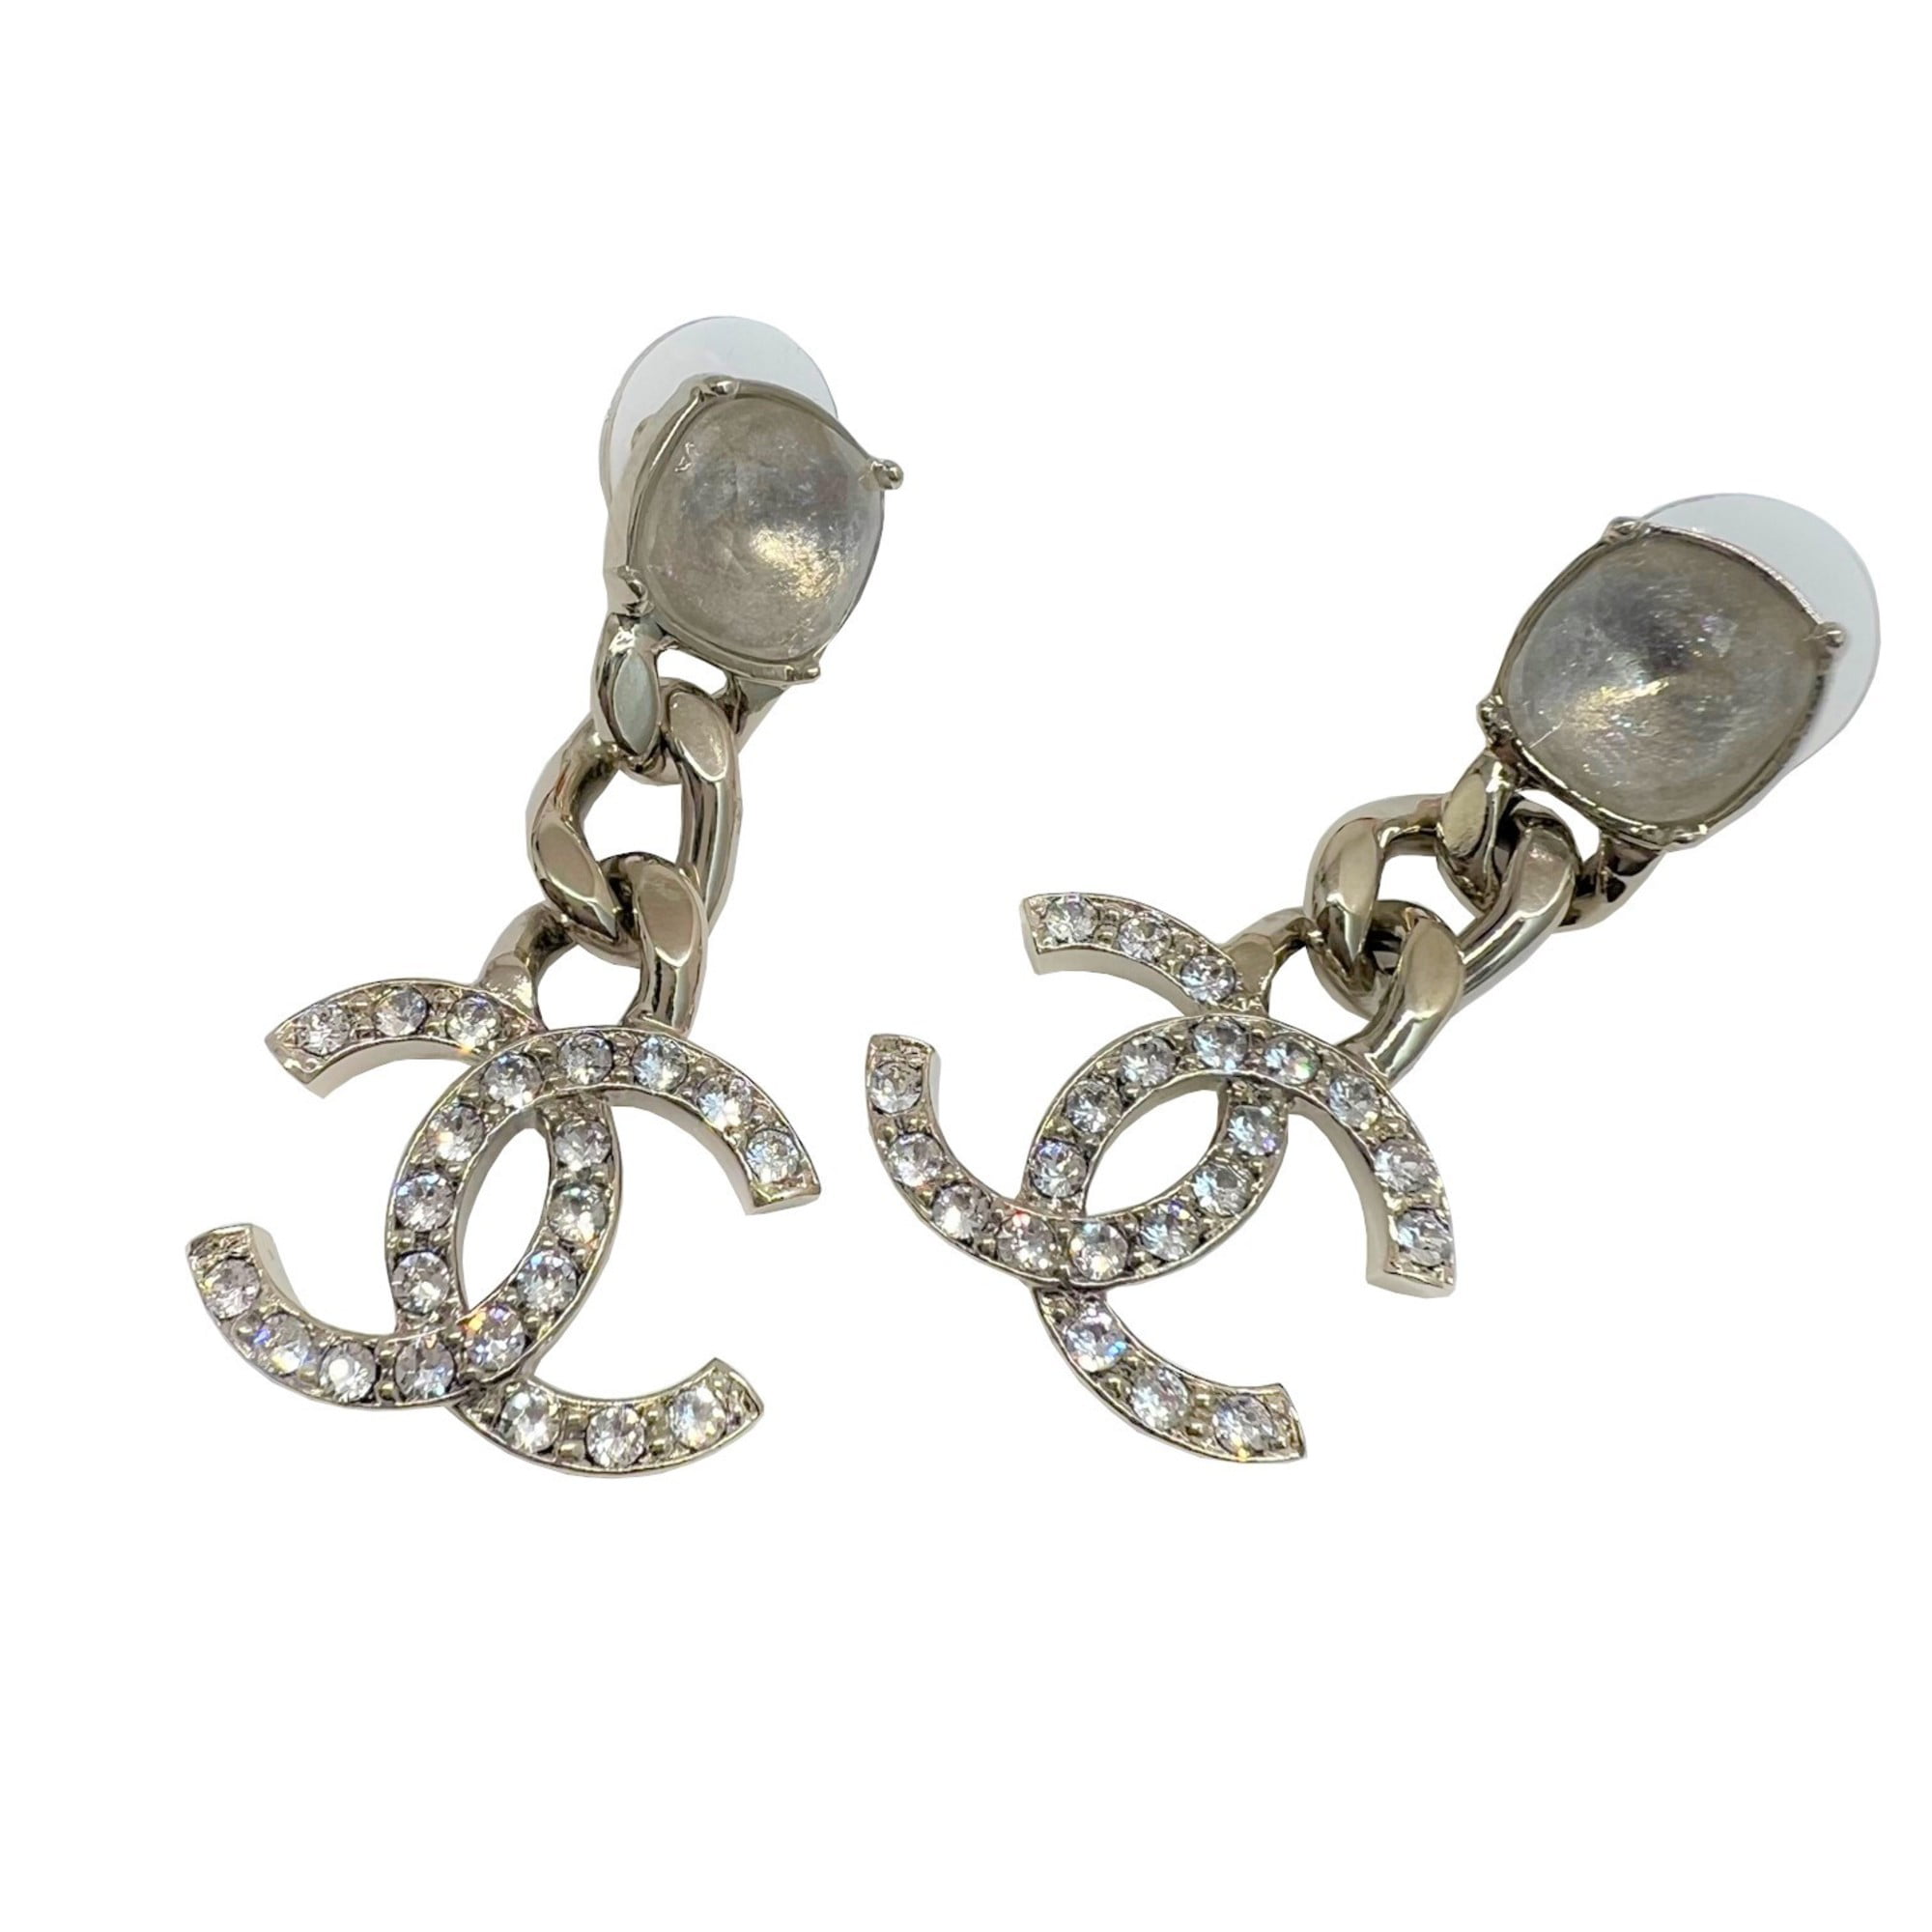 chanel earrings women real gold